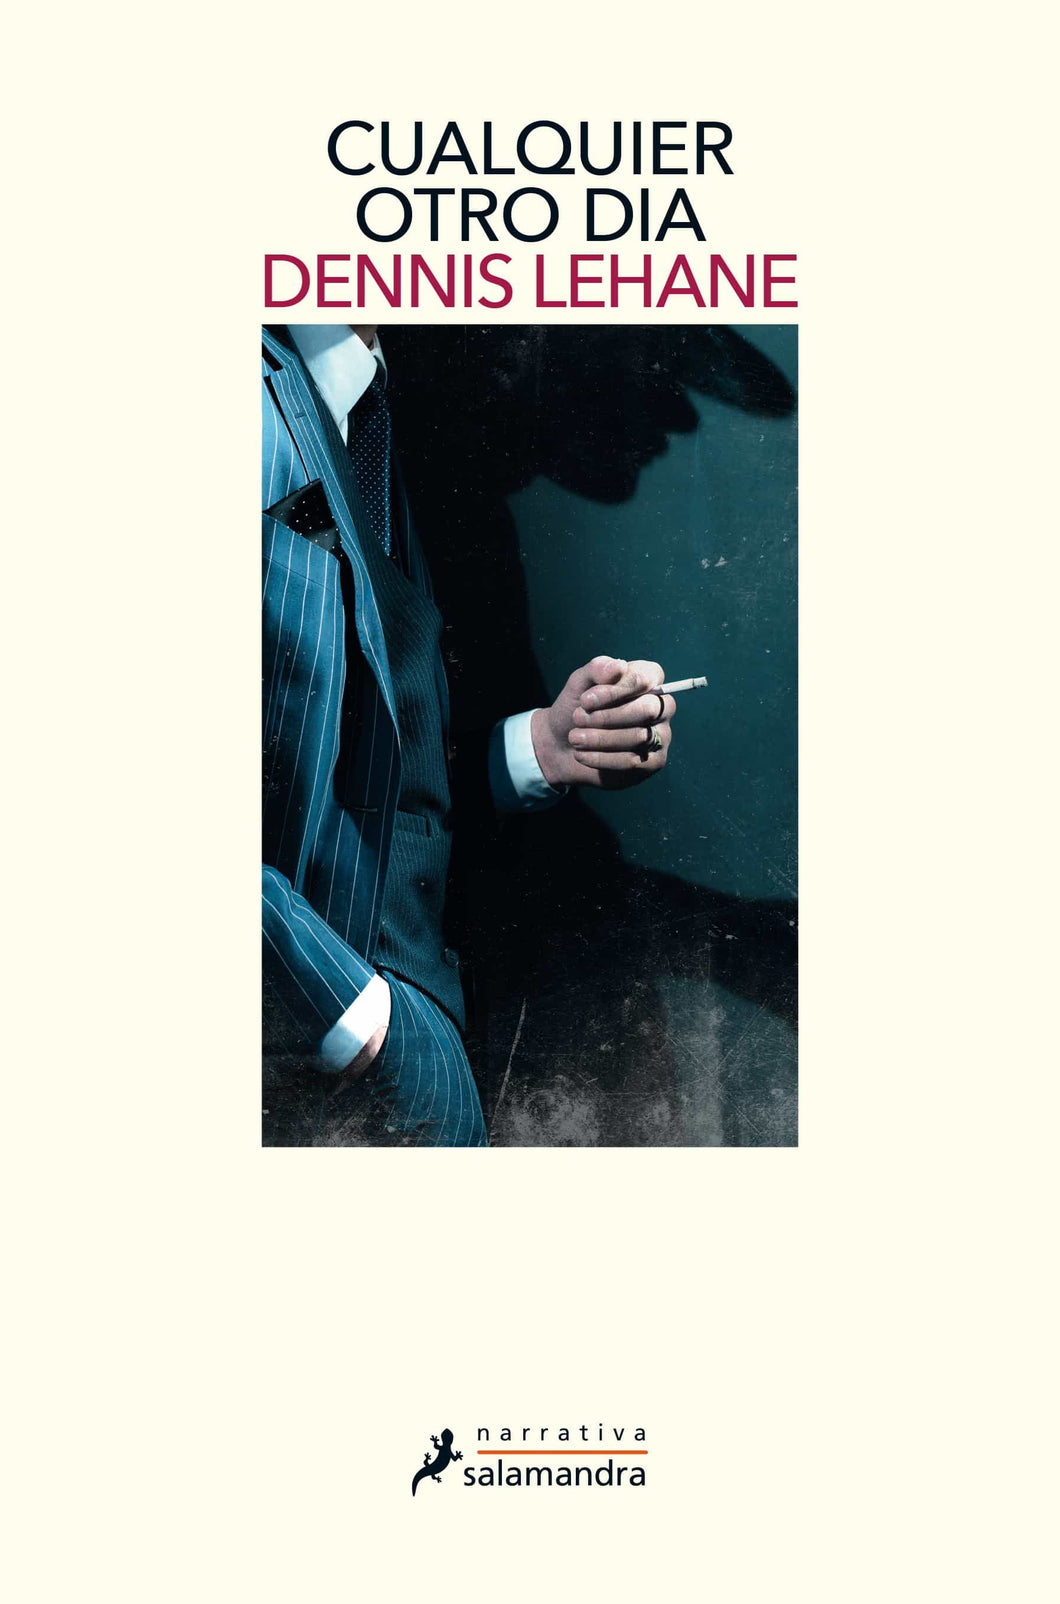 CUALQUIER OTRO DÍA - Dennis Lehane